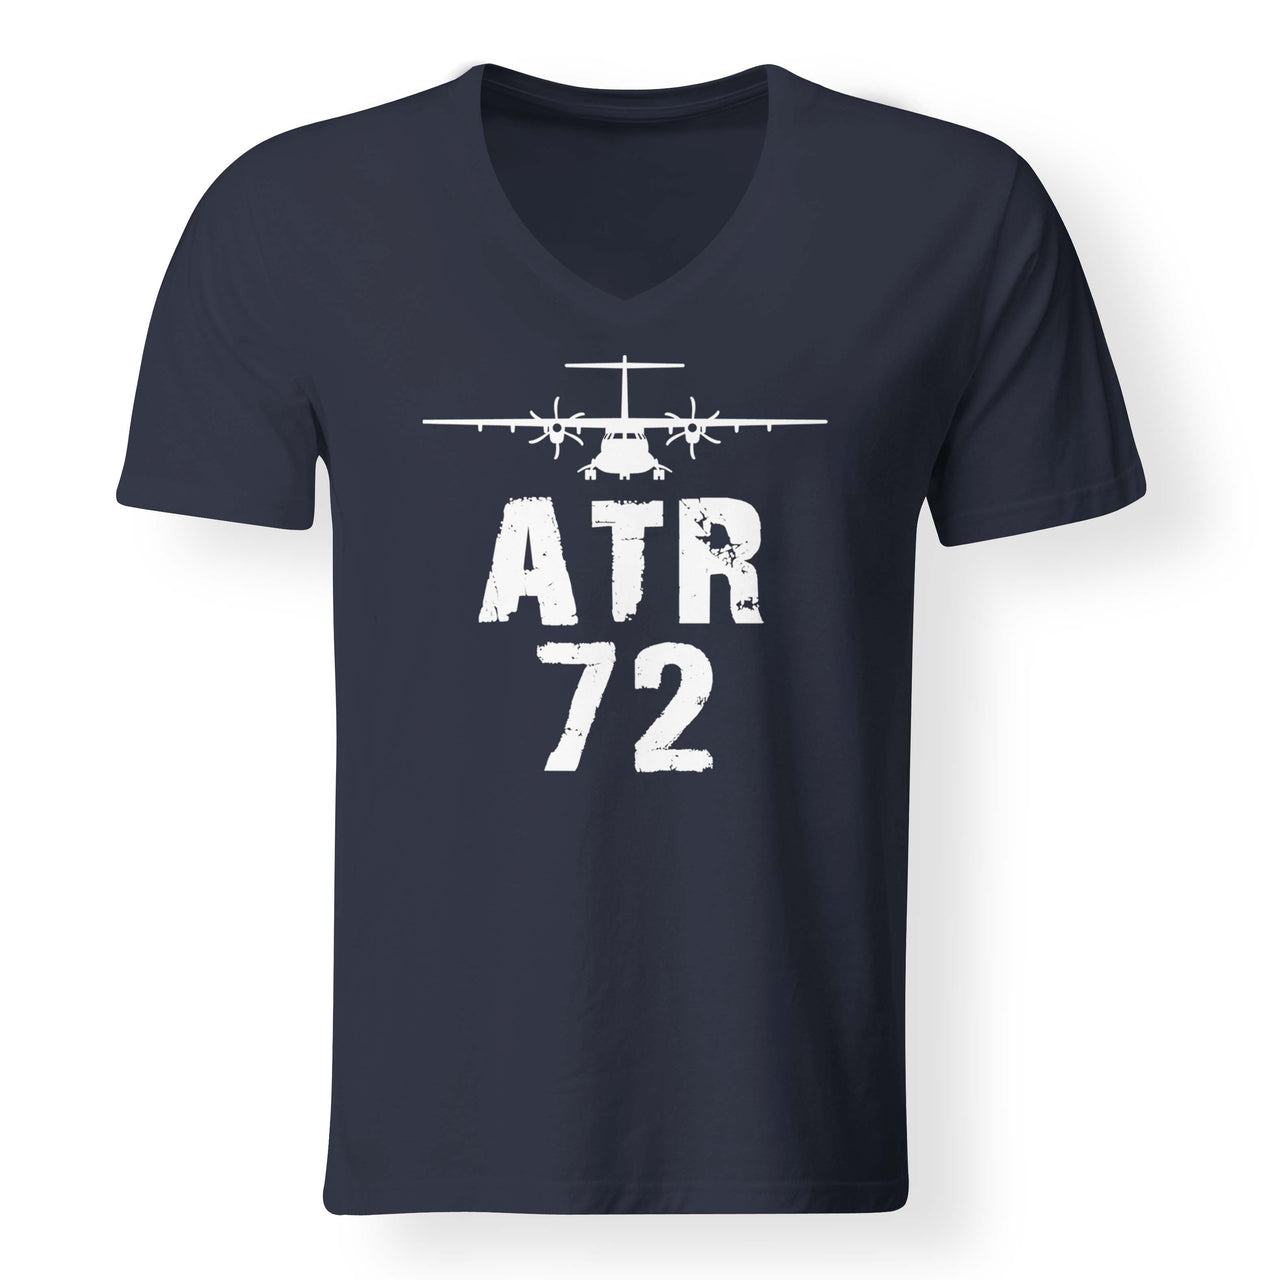 ATR-72 & Plane Designed V-Neck T-Shirts